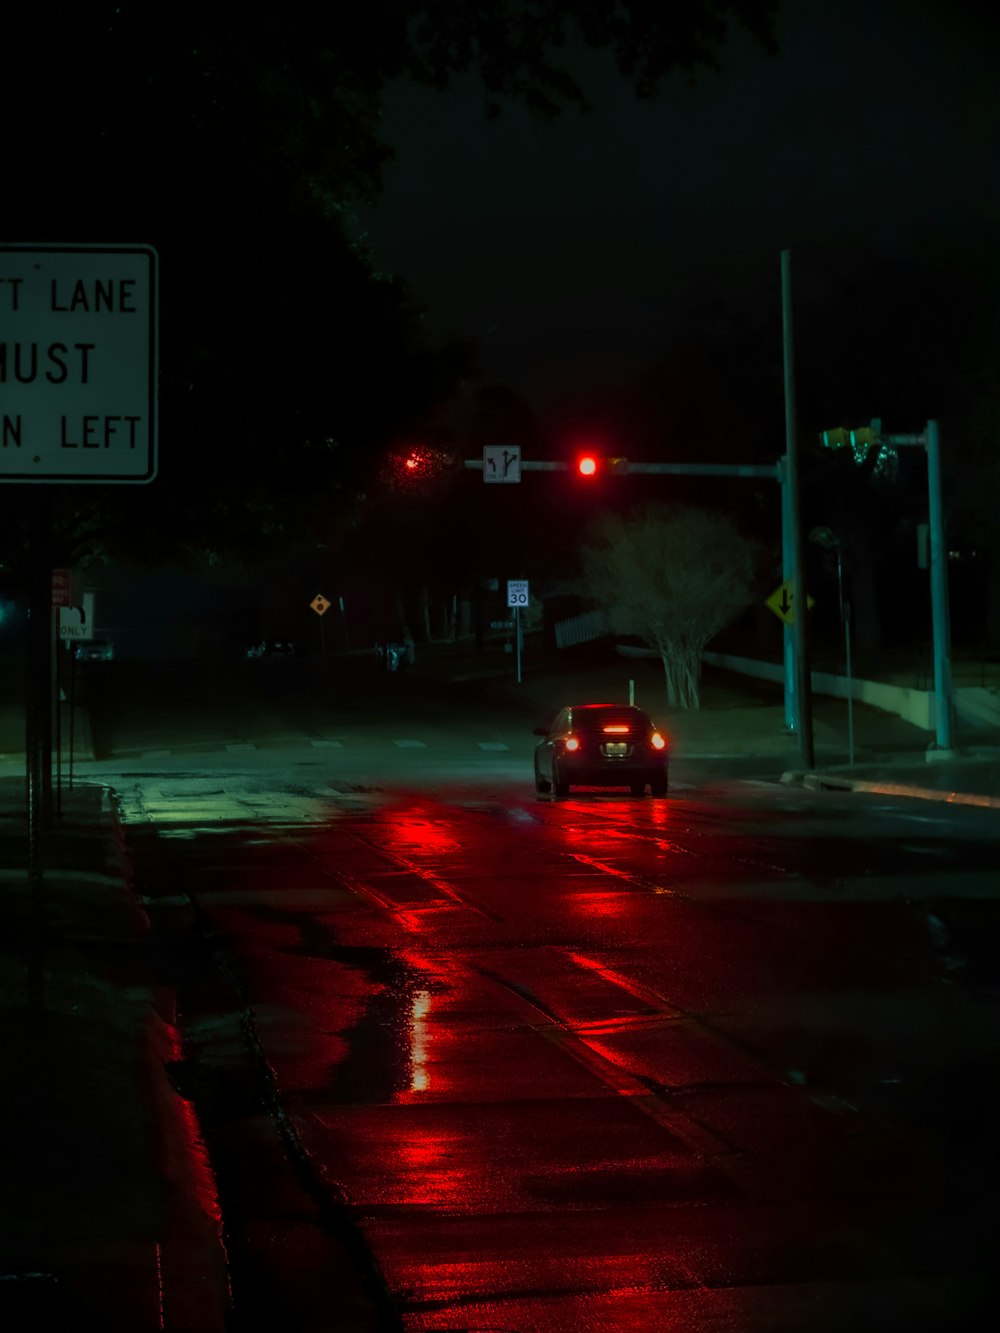 Un coche circulando por una calle de noche